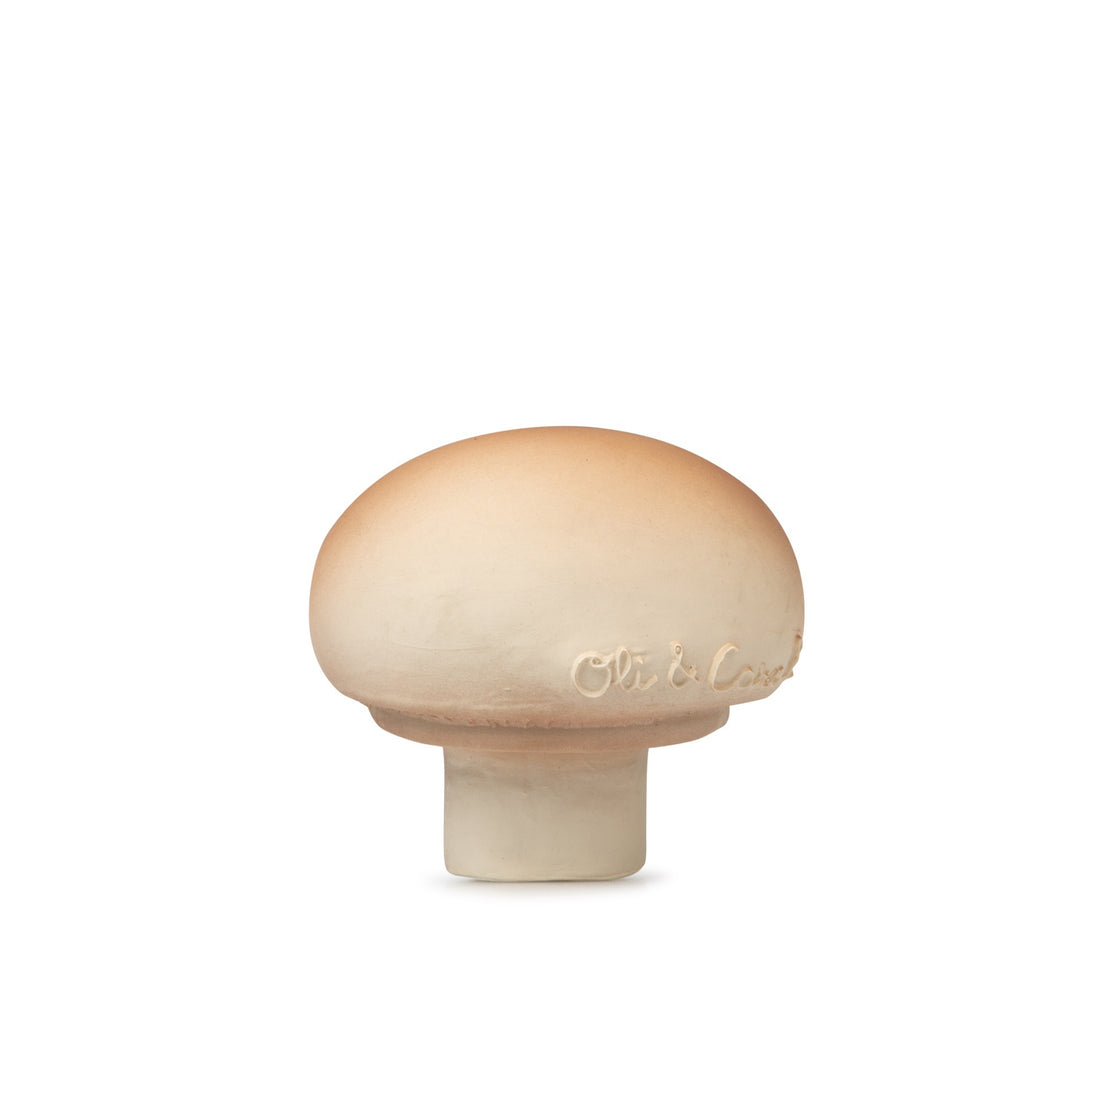 oli-&-carol-manolo-the-mushroom- (1)